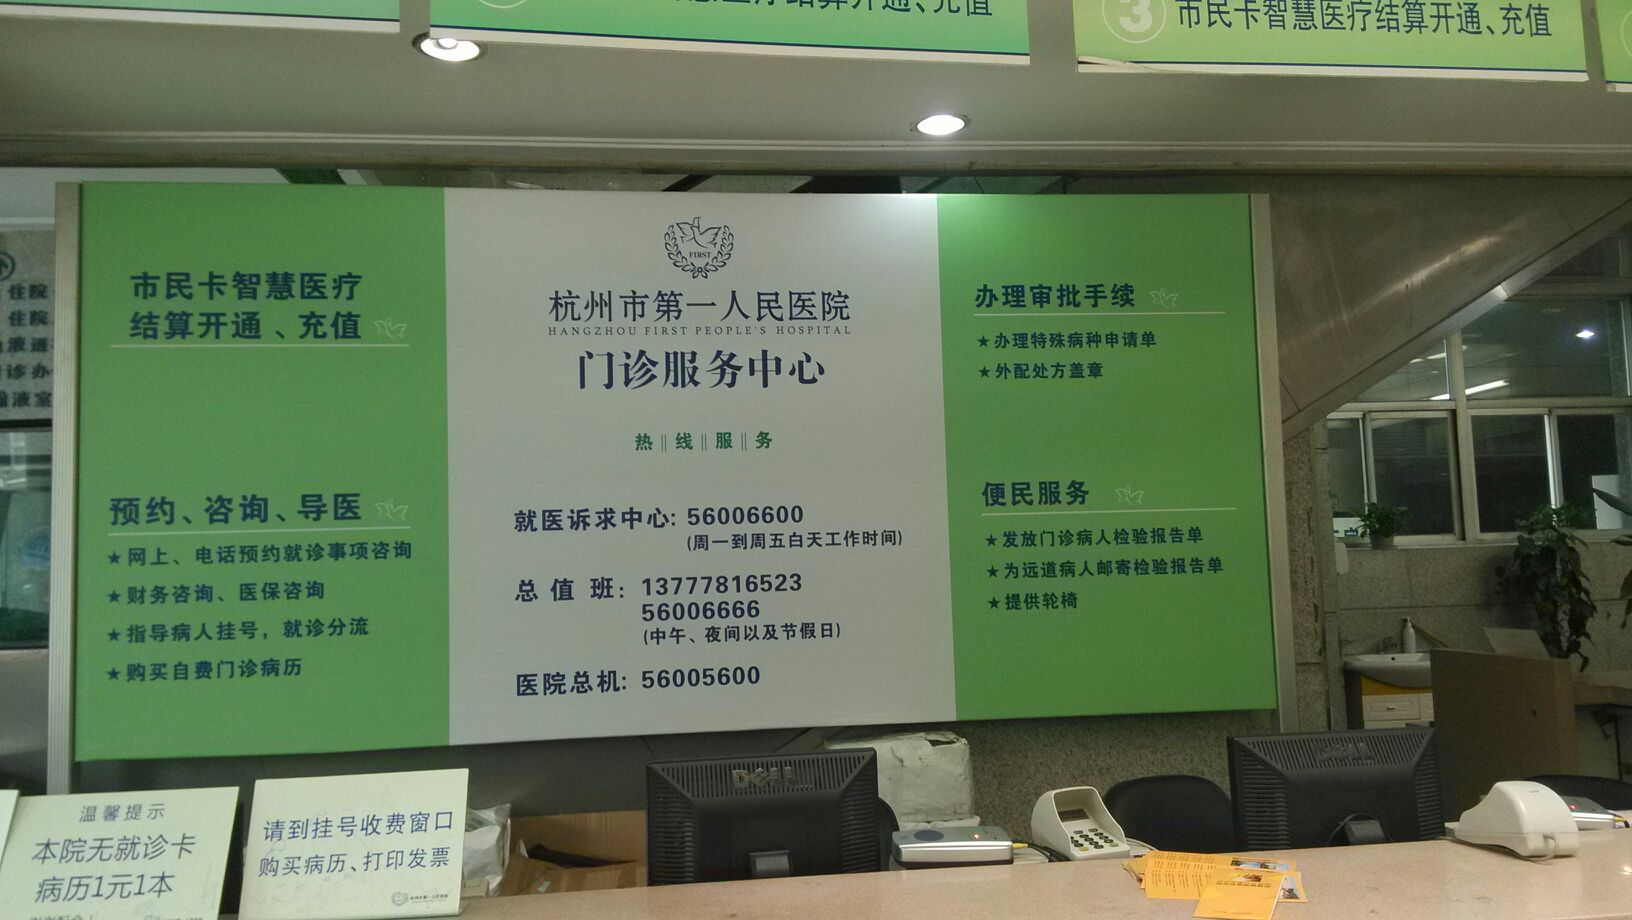 包含北京大学国际医院专家代挂号，提供一站式服务省事省心的词条